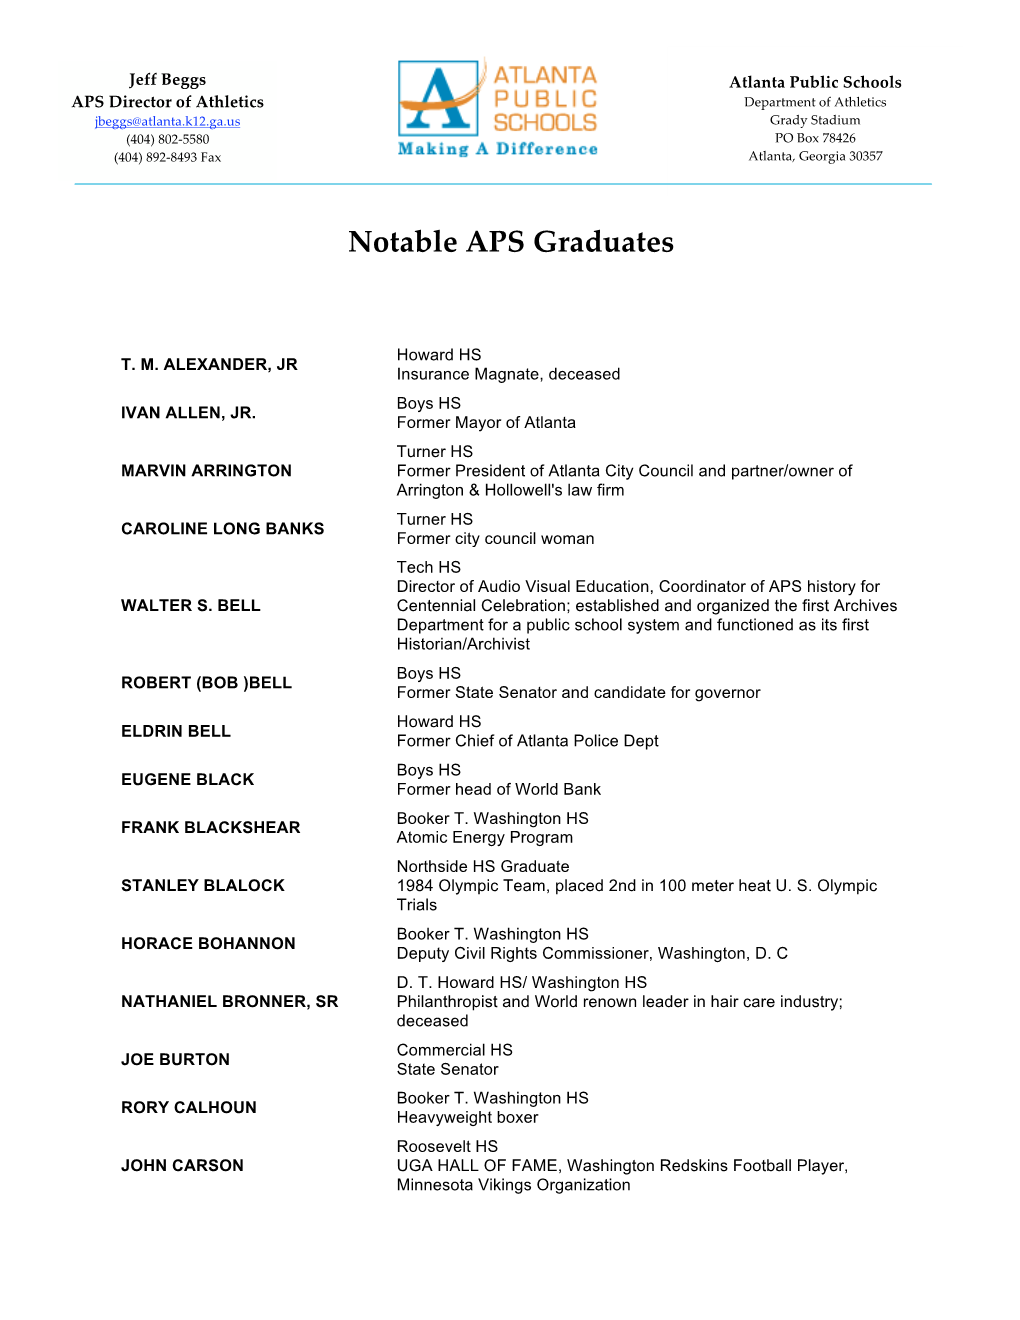 APS Notable Graduates